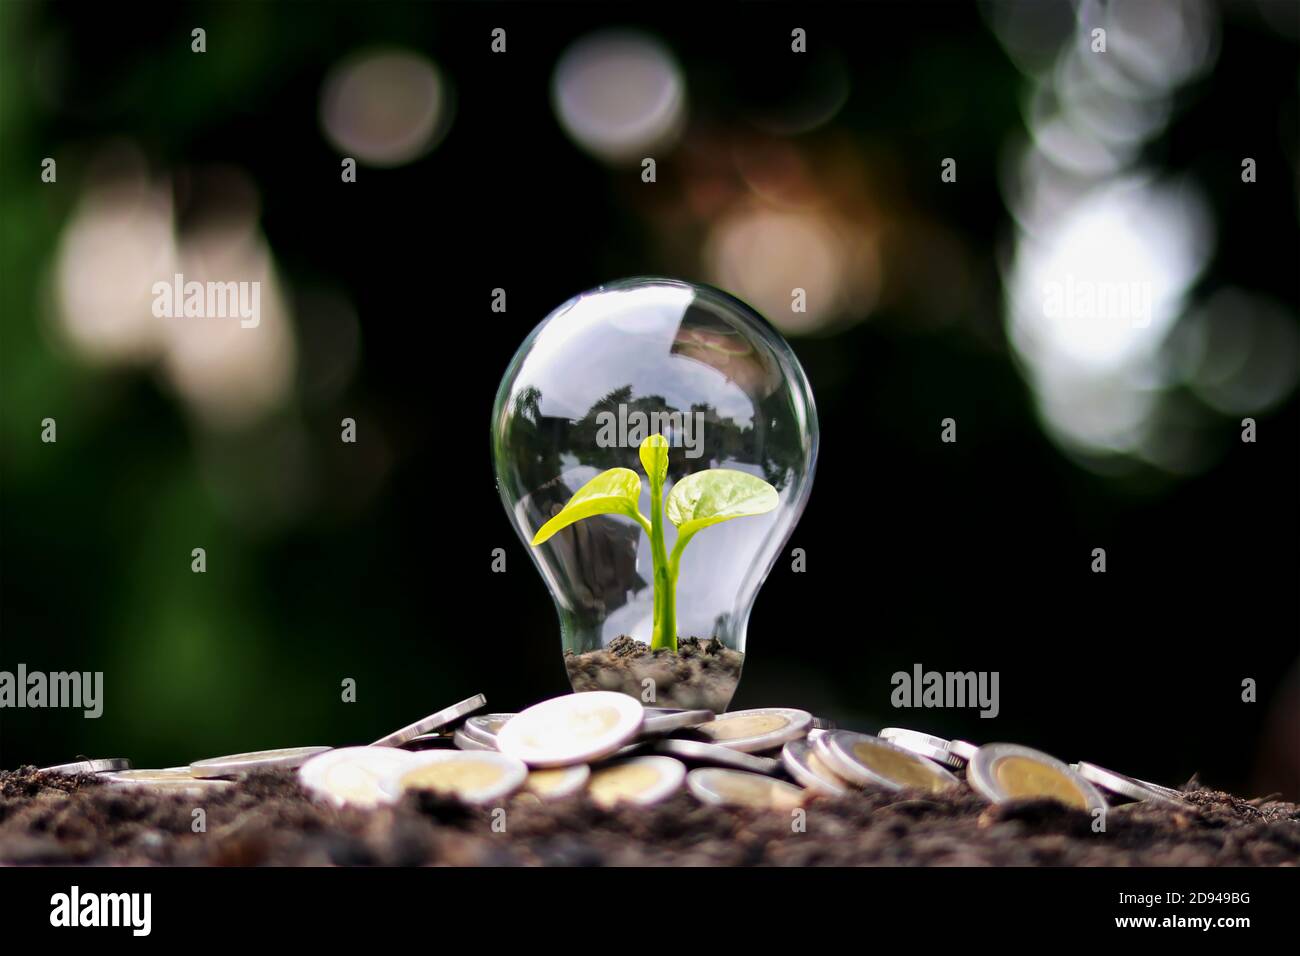 L'arbre pousse sur de l'argent dans des ampoules à économie d'énergie, le concept de croissance financière, d'économie d'énergie et de protection de l'environnement le jour de la Terre. Banque D'Images